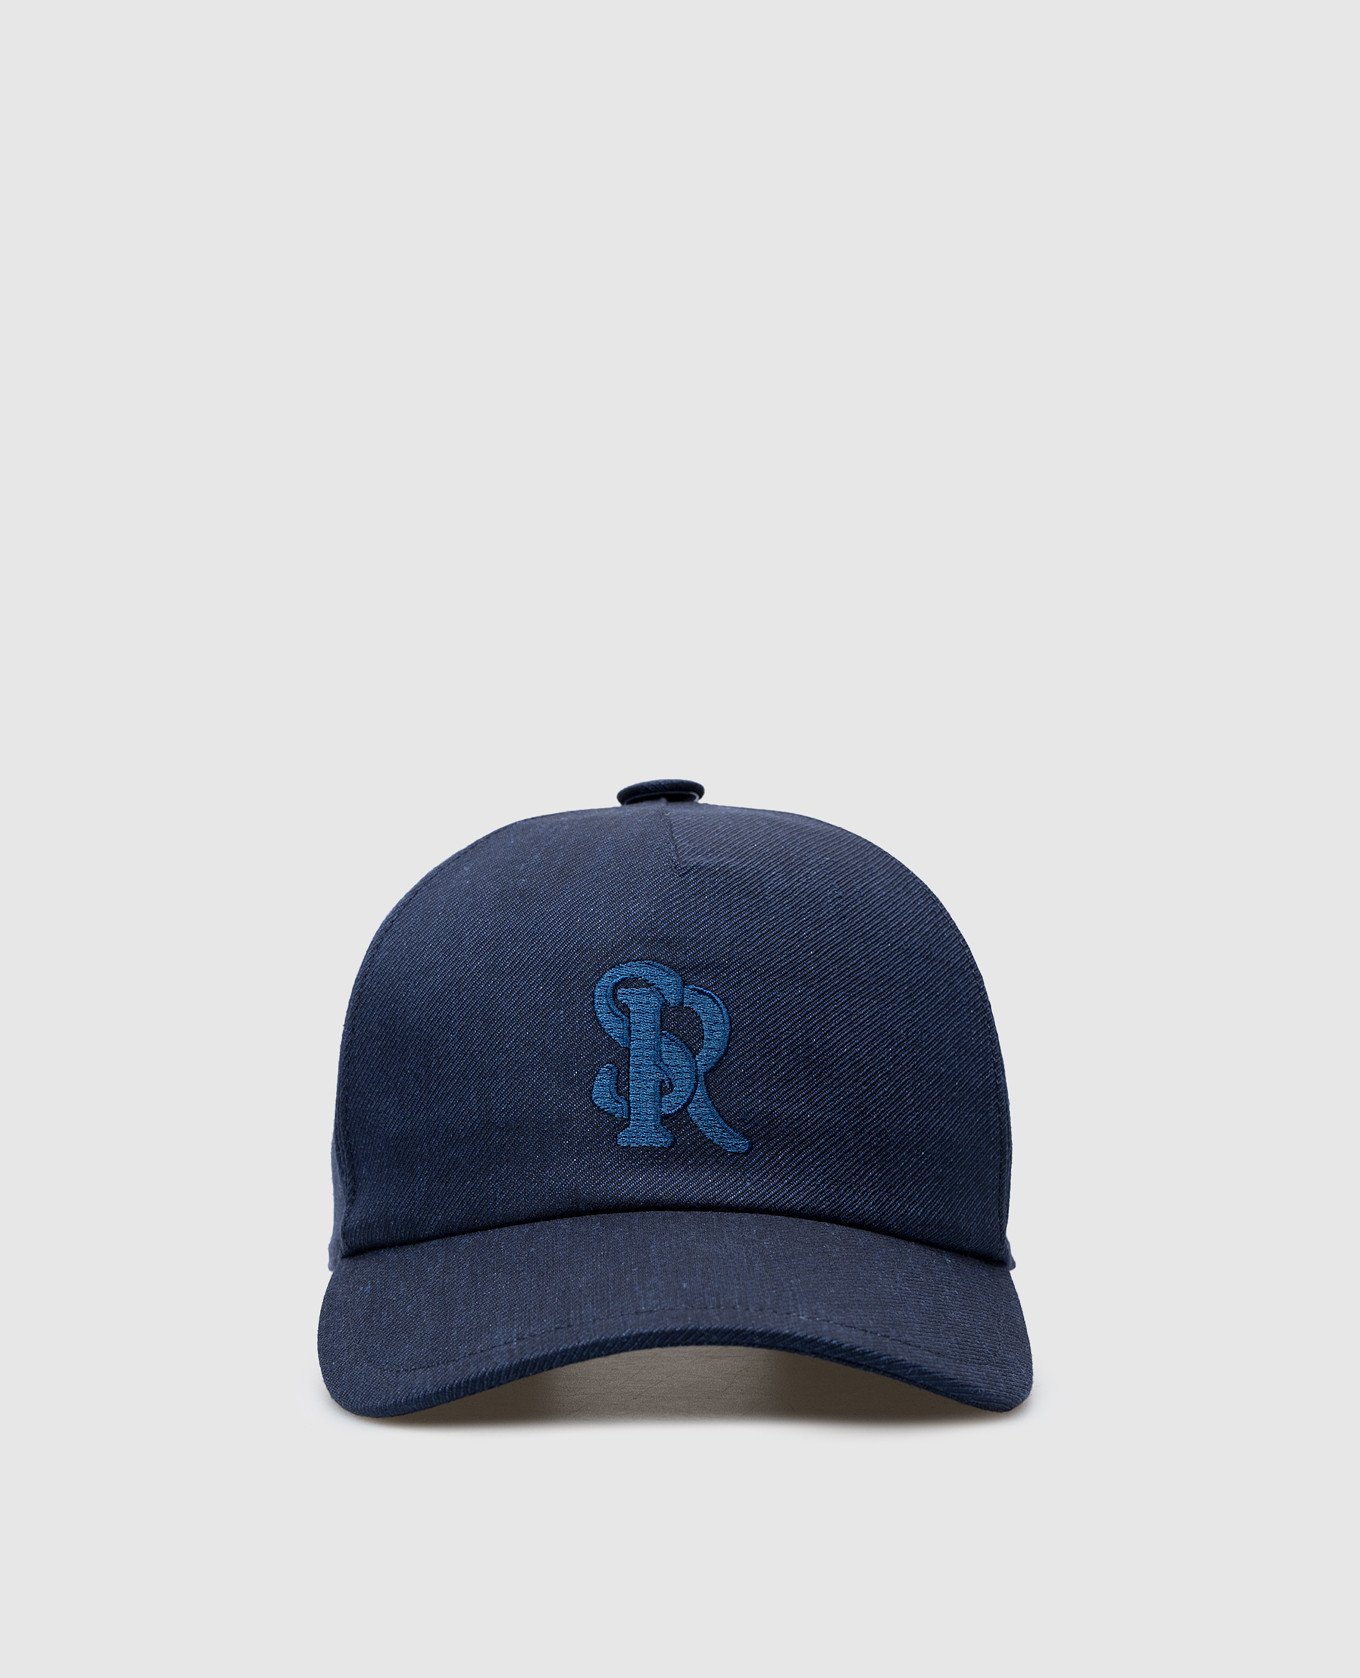 Голубая кепка из льна и шерсти с вышивкой монограммы логотипа